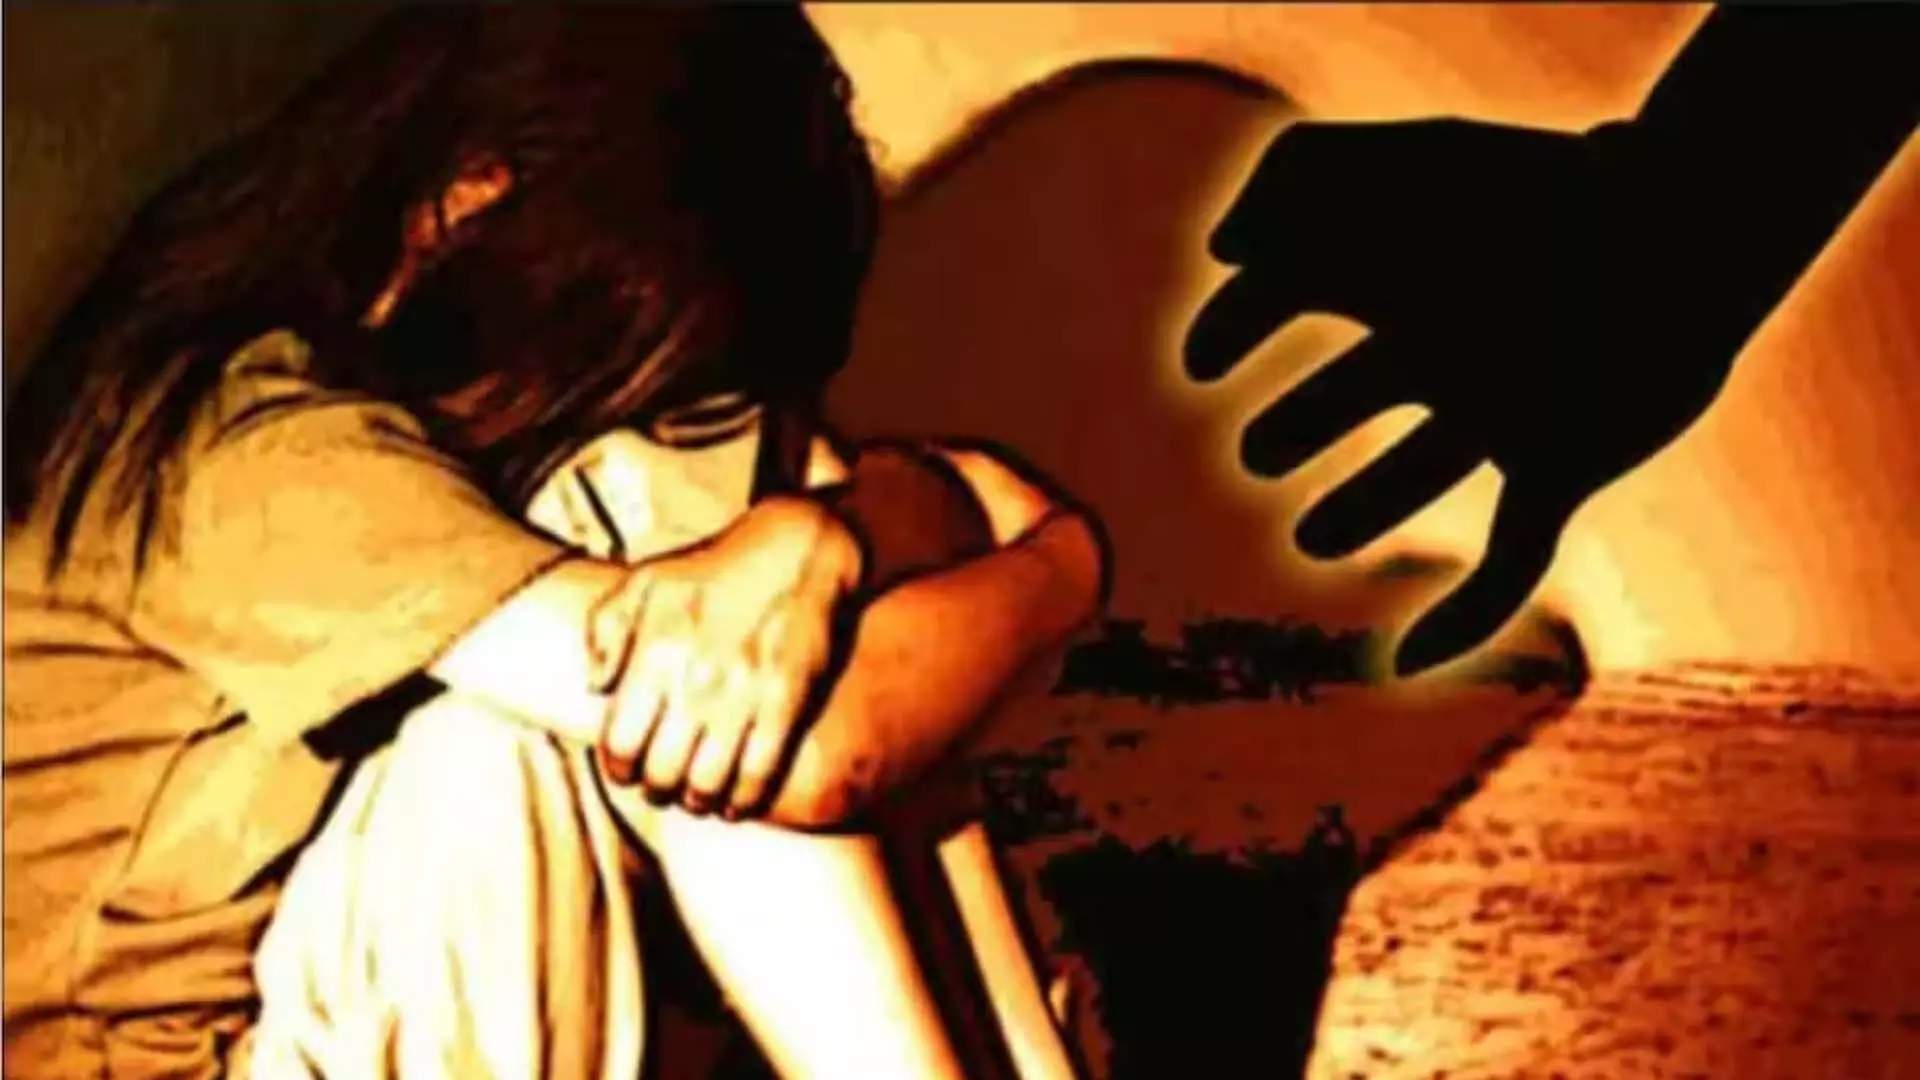 लड़कियों, महिलाओं के साथ यौन उत्पीड़न करने के आरोप में अज्ञात डिलीवरी लड़कों पर मामला दर्ज